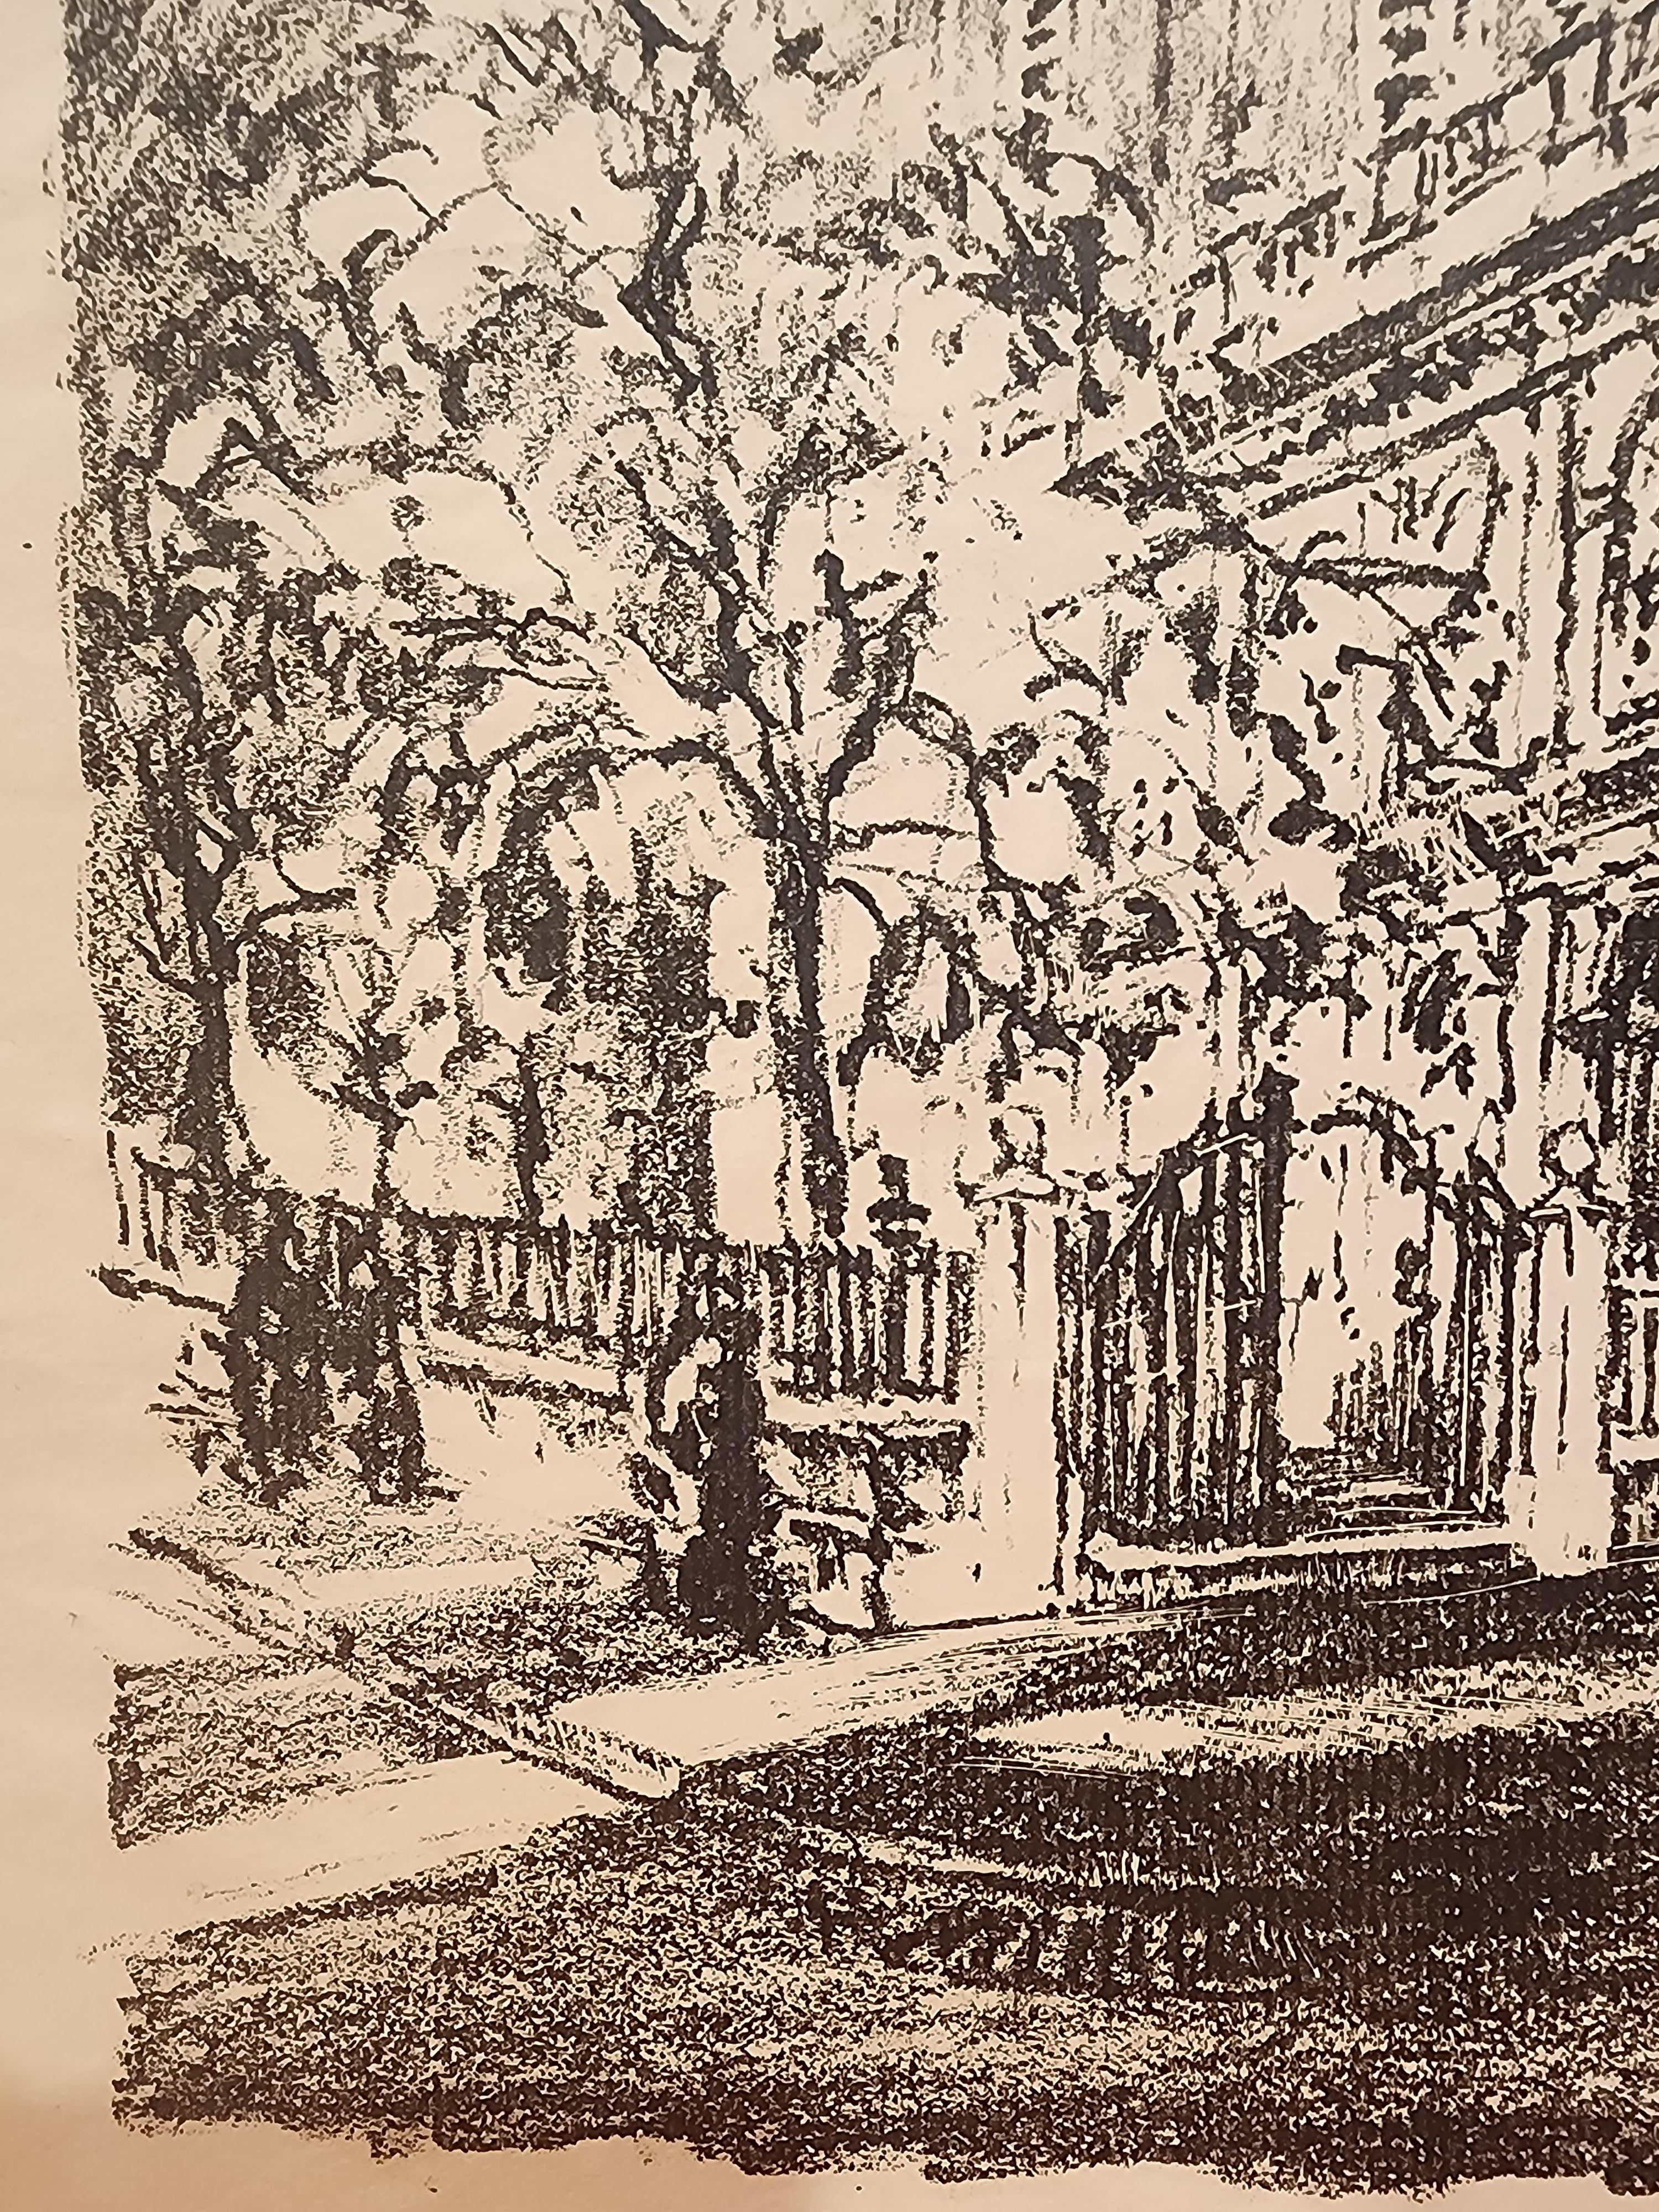 Eine Lithografie des bekannten Künstlers Herbert Pullinger aus Philadelphia, die das Wahrzeichen der Stadt, die Christ Church, darstellt.

Ein reich getuschter Abdruck mit breiten Rändern.
Der Druck ist mit Bleistift signiert und scheint auf 1920